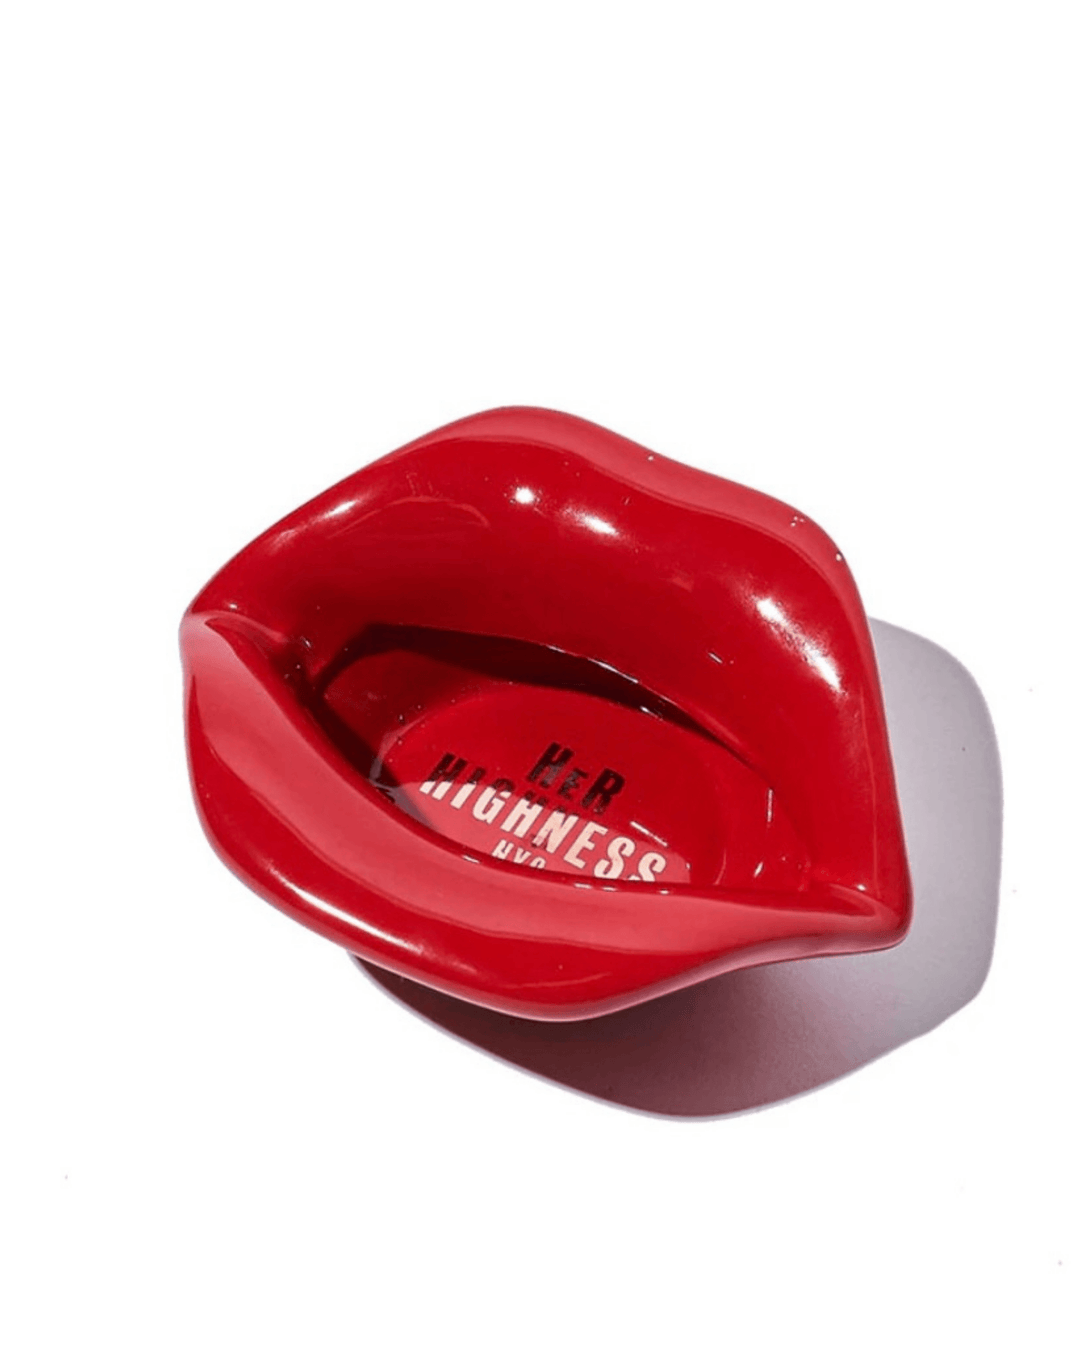 her highness ceramic red lips ashtray